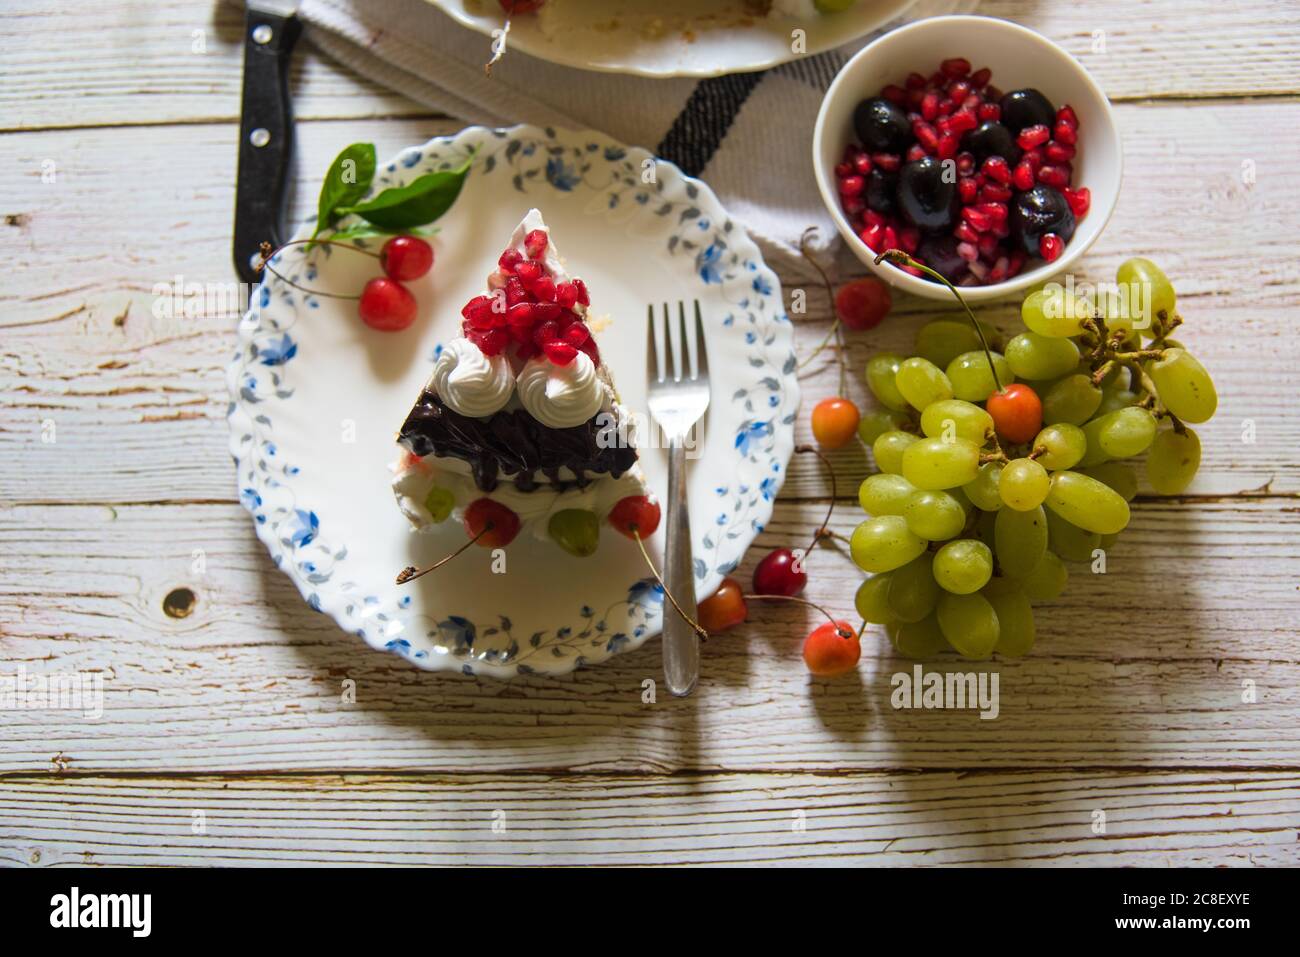 Ein Stück Kuchen mit Gewürzen macht ein köstliches Dessert. Stockfoto